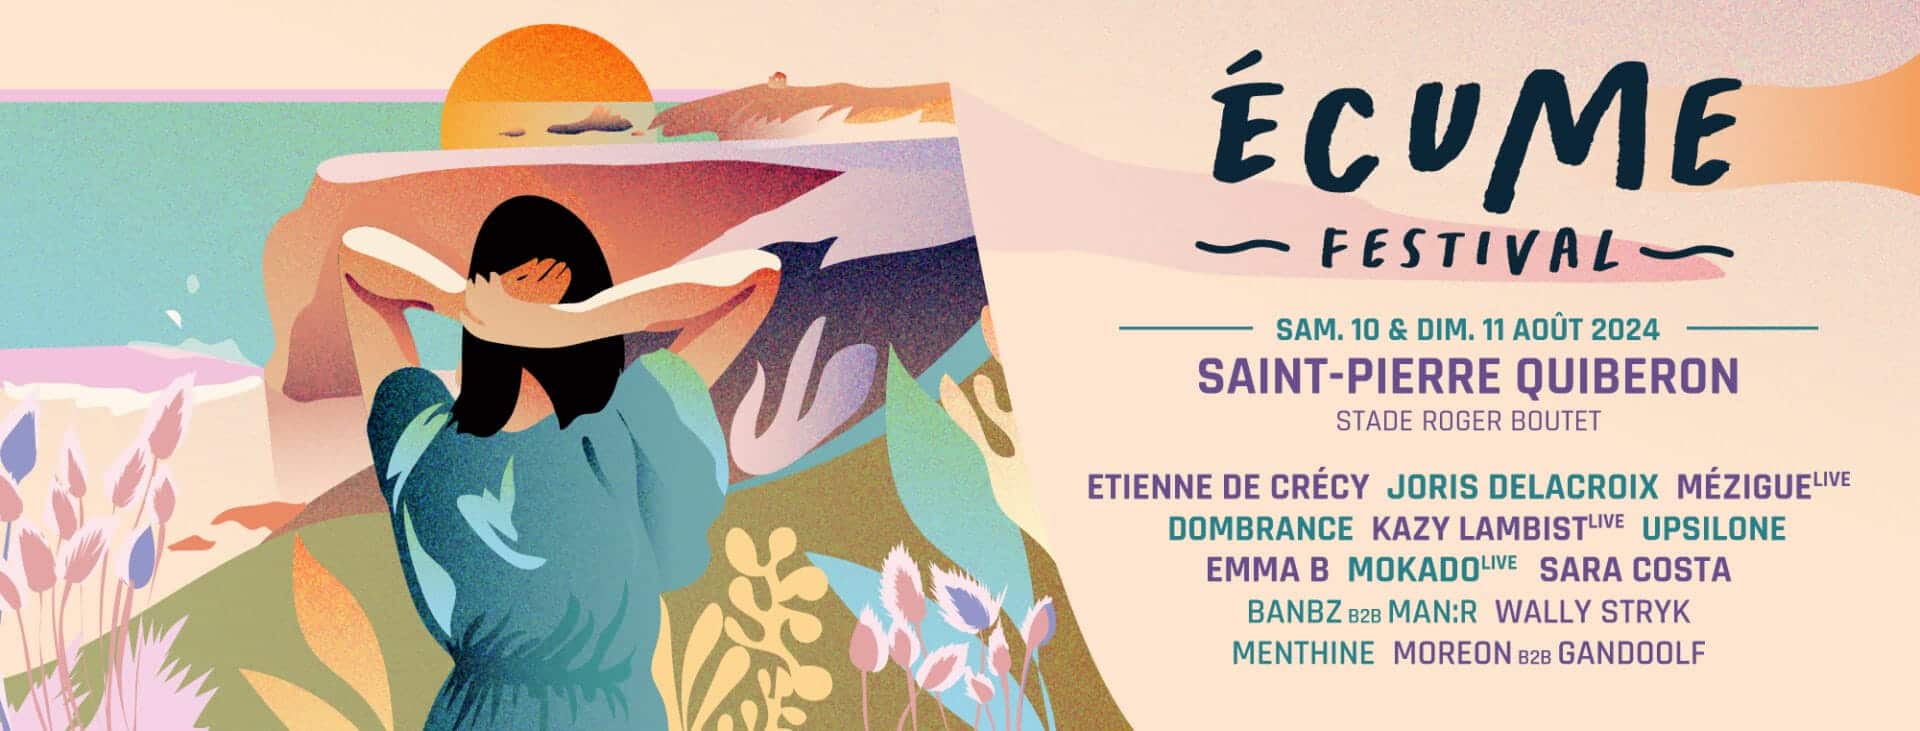 Écume Festival, 10 & 11 août 2024 à Saint-Pierre-Quiberon (56)